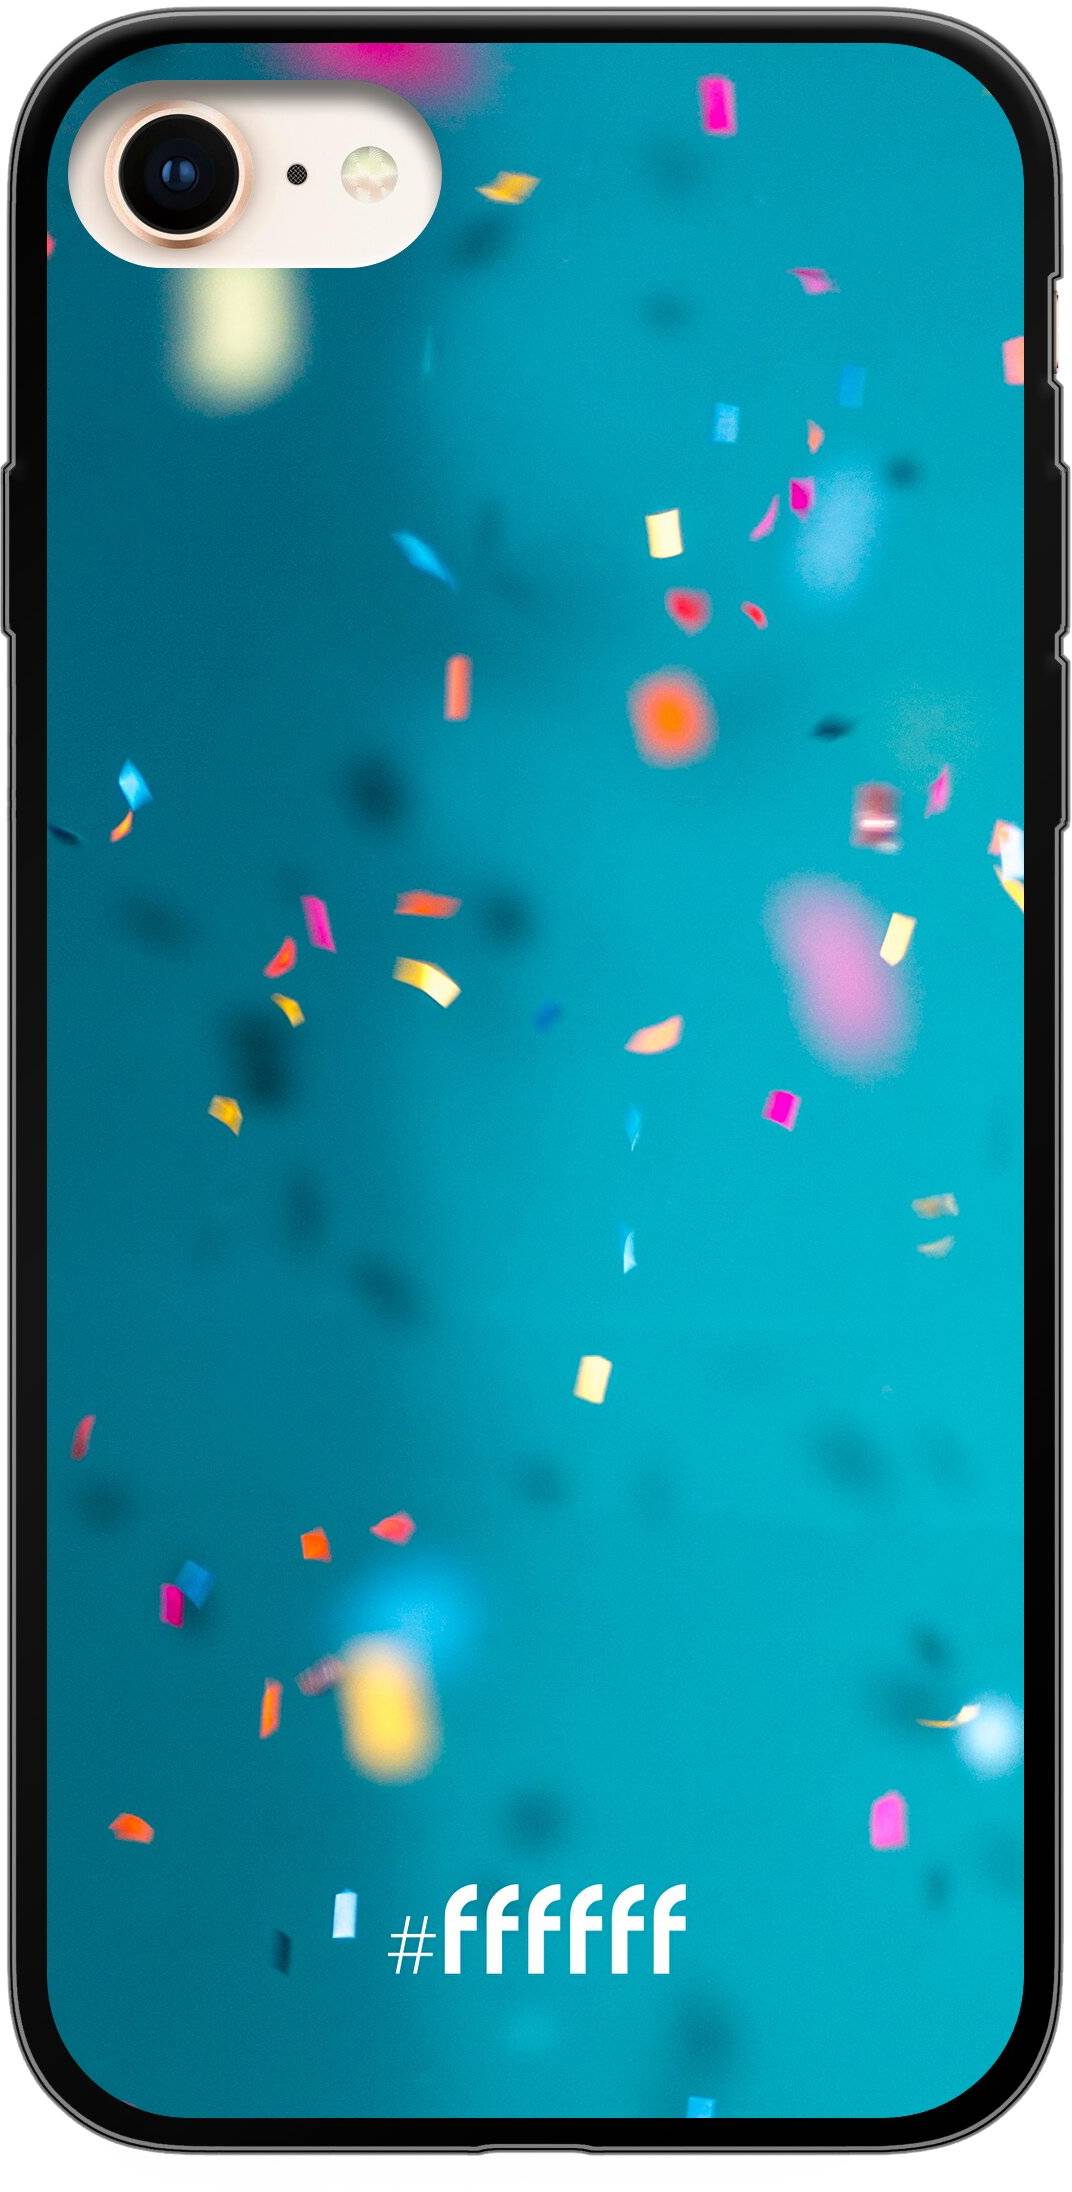 Confetti iPhone 7